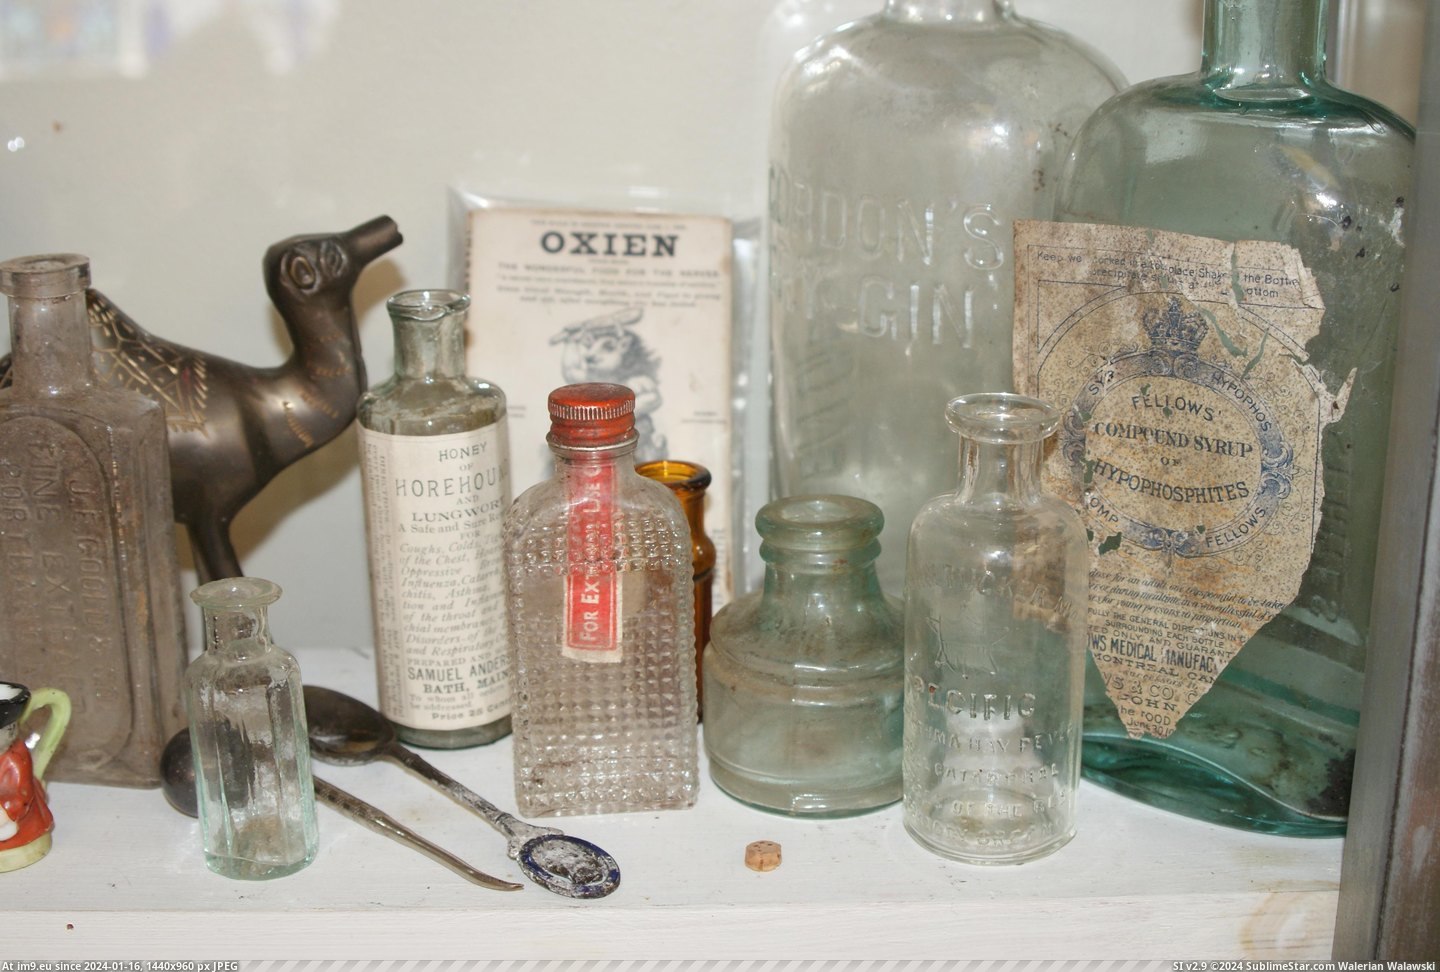 #Museum #Maine #Naples #Bottle MAINE BOTTLE MUSEUM NAPLES (28) Pic. (Bild von album MAINE BOTTLE MUSEUM))